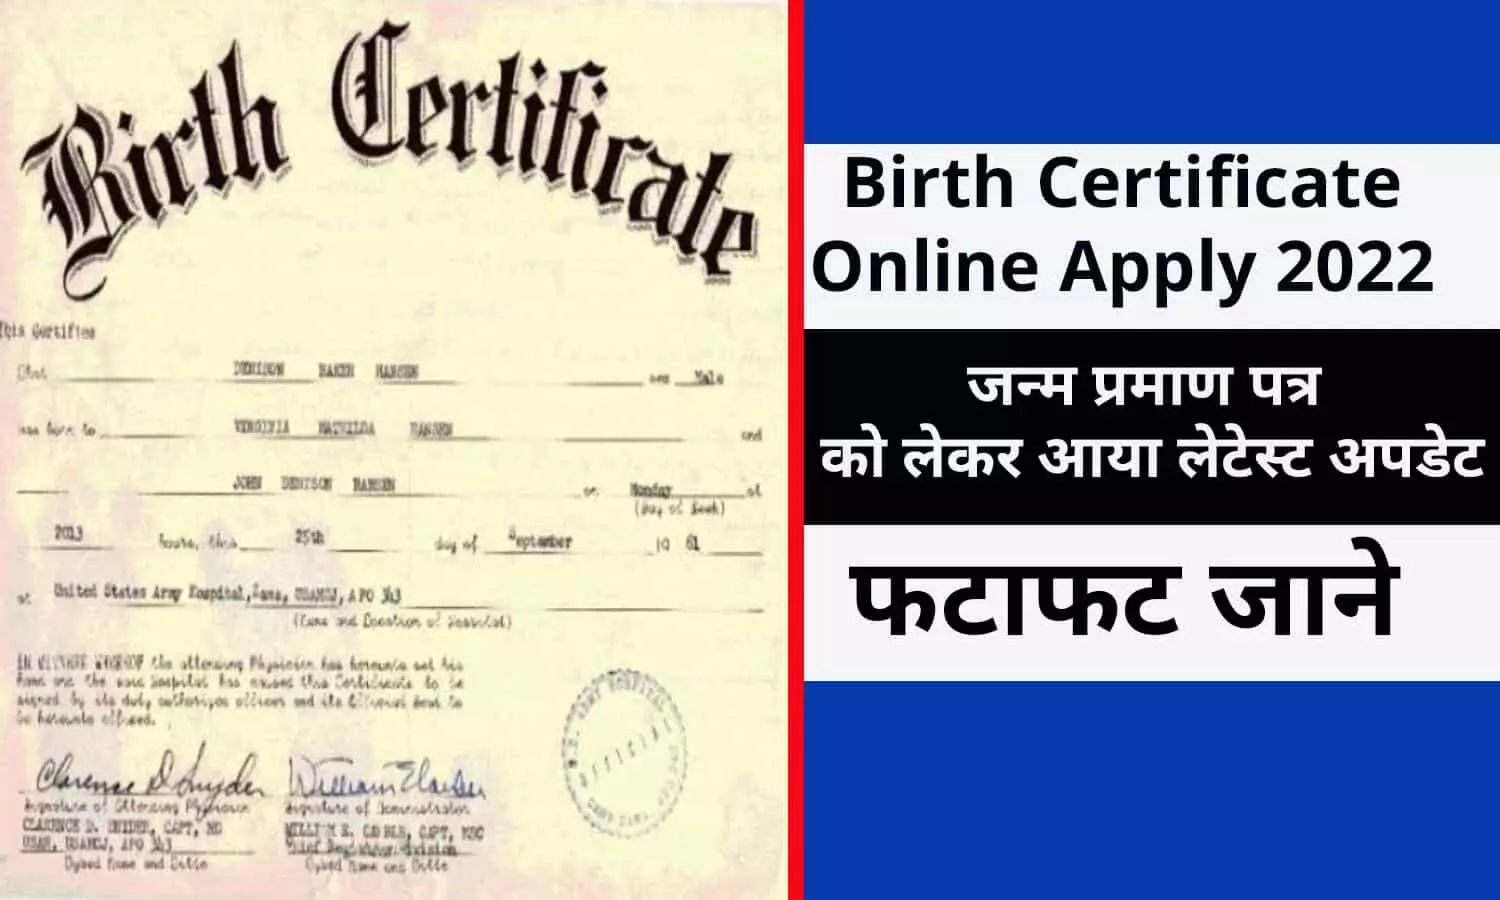 Birth Certificate Online Apply 2022 In Hindi: जन्म प्रमाण पत्र को लेकर आया लेटेस्ट अपडेट, फटाफट जाने